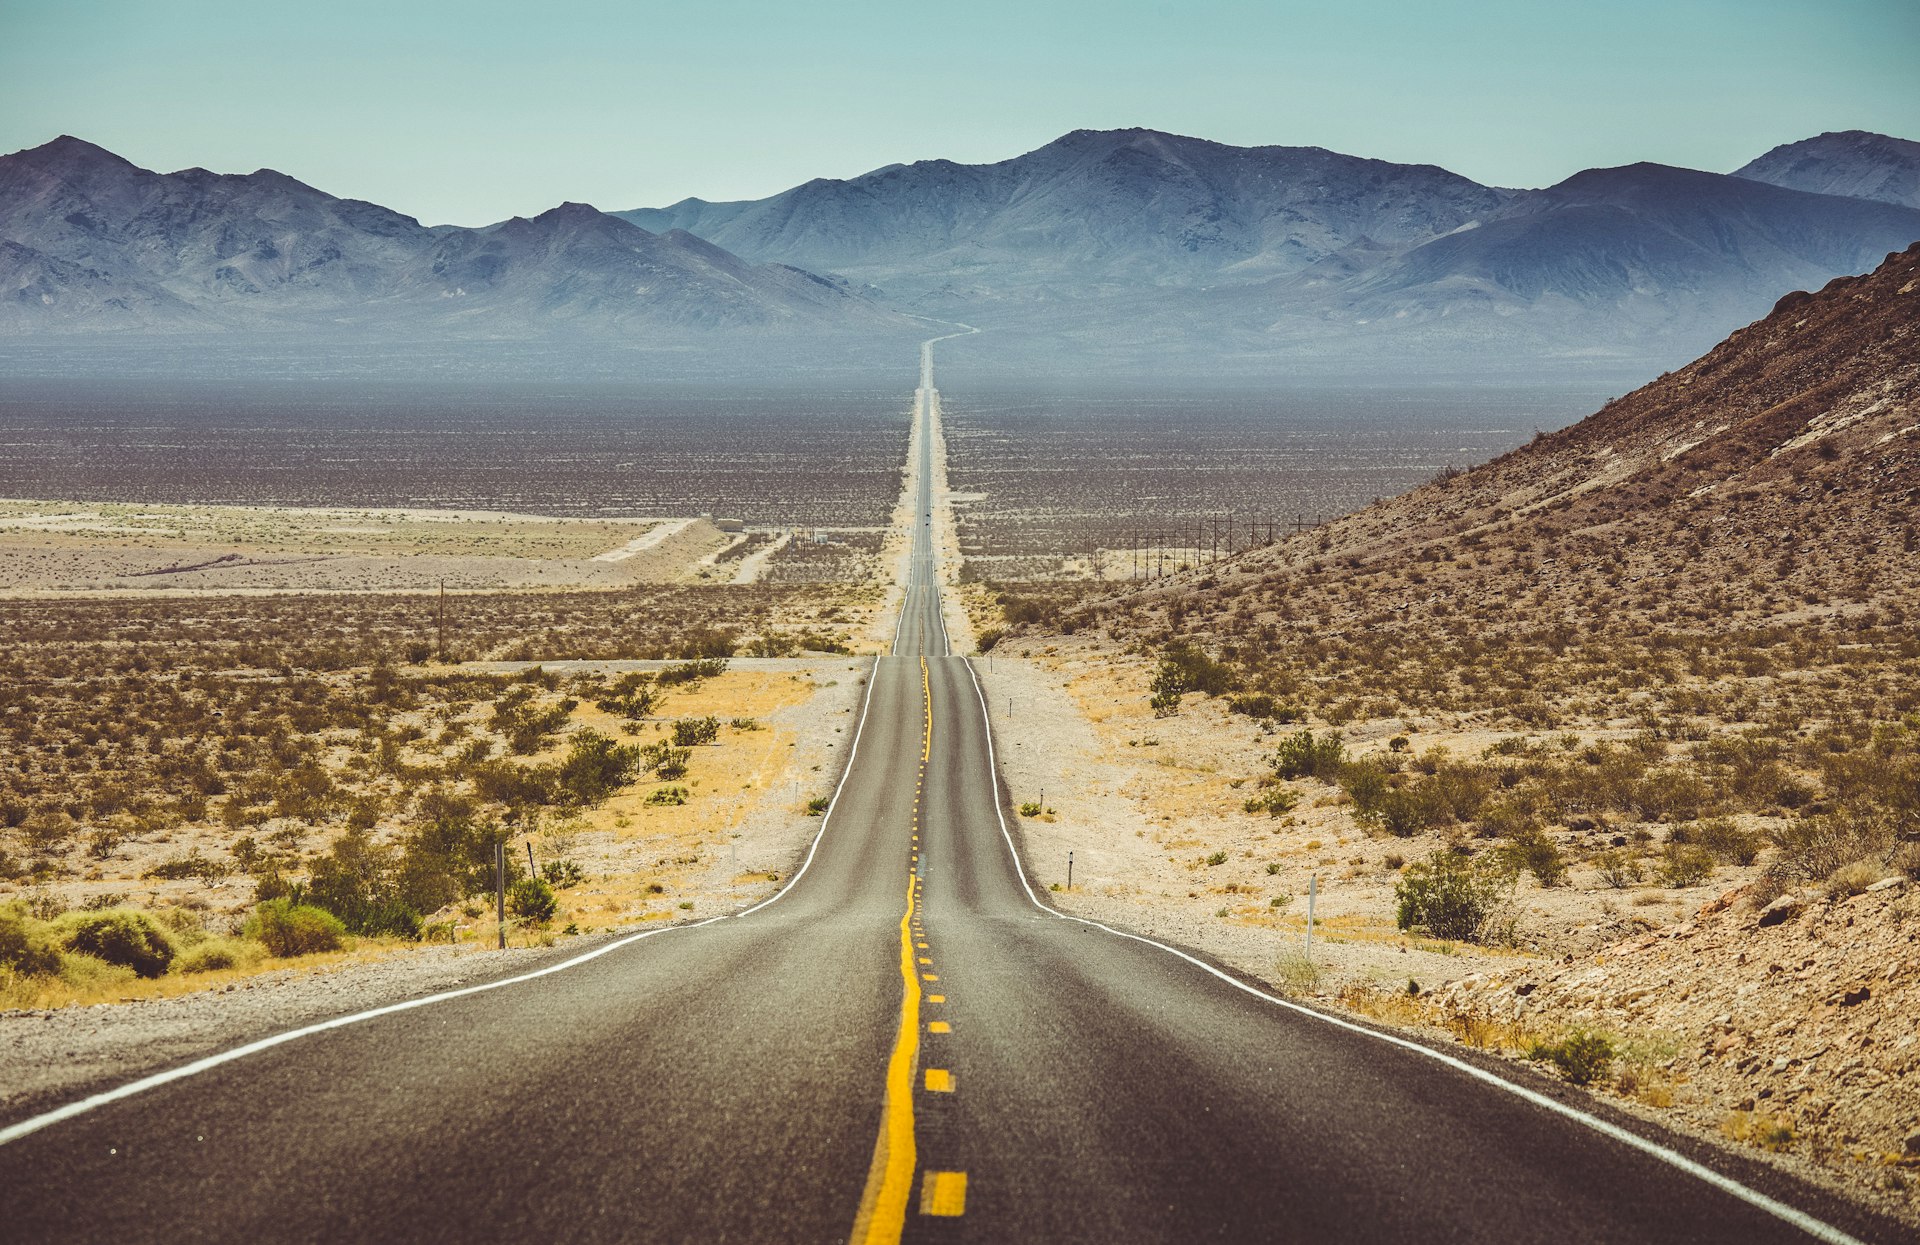 Empty desert road